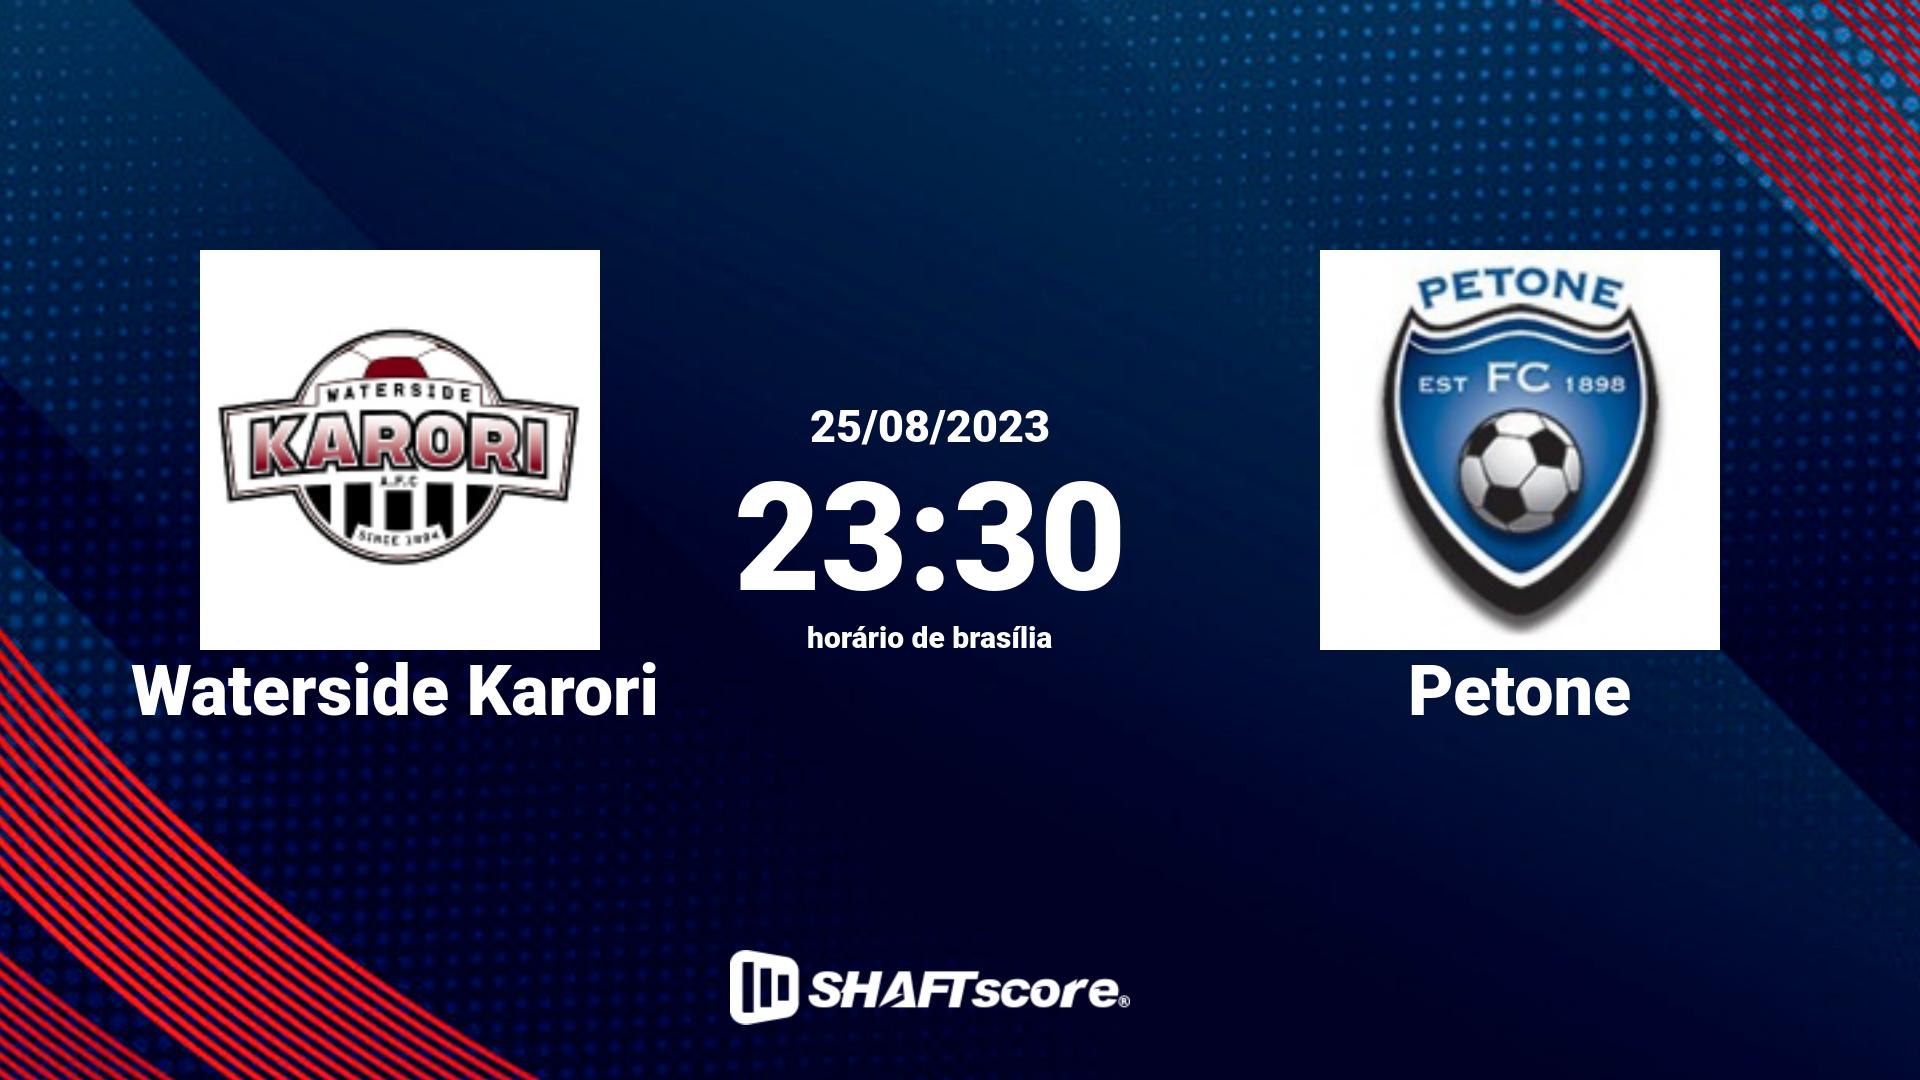 Estatísticas do jogo Waterside Karori vs Petone 25.08 23:30